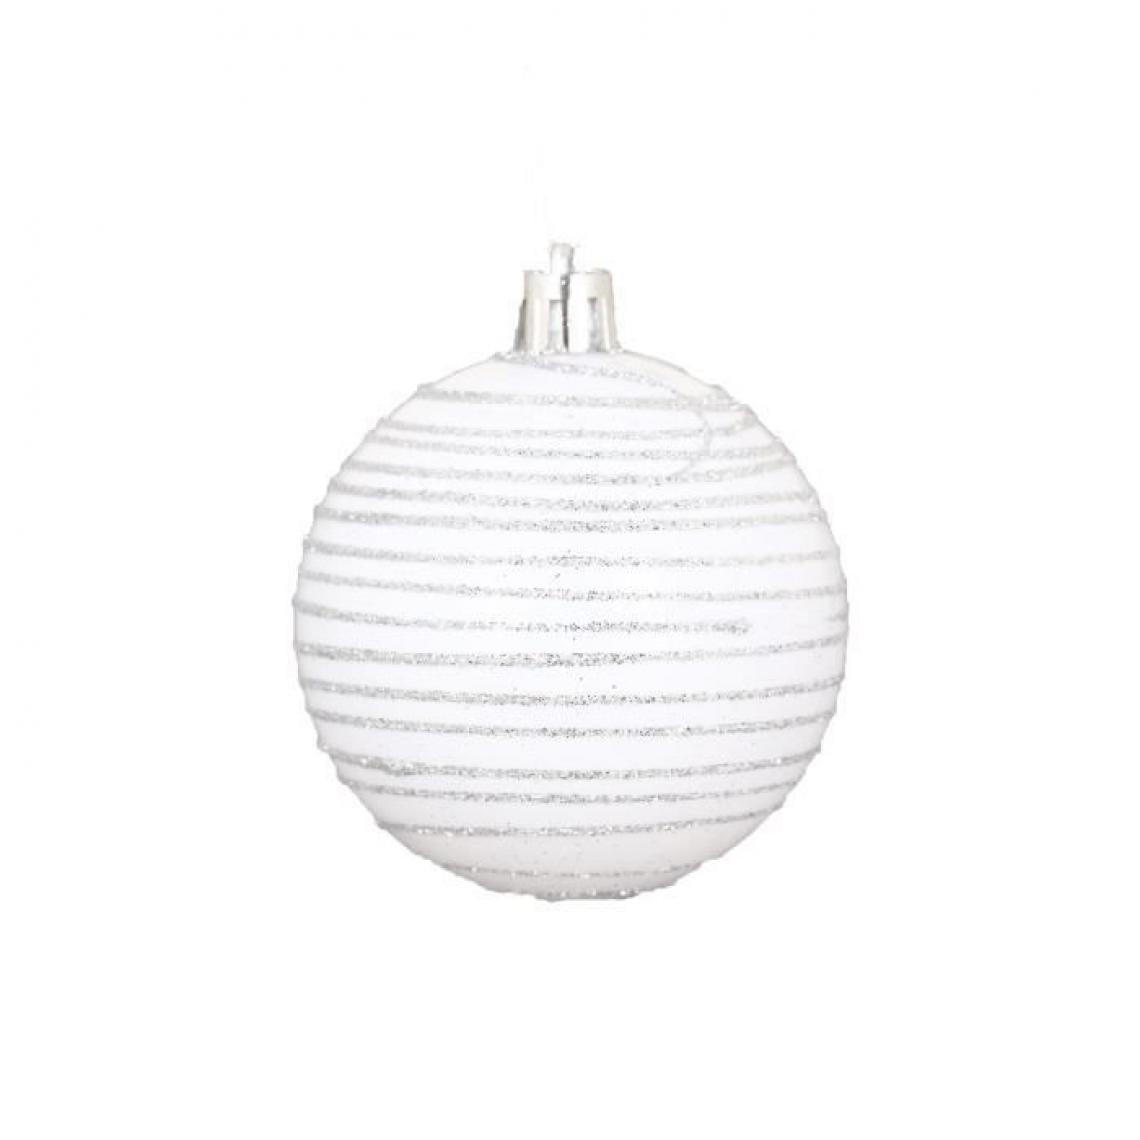 Cstore - AUTOUR DE MINUIT - set de 6 boules décorées finition brillante - ø6 cm - blanc - Décorations de Noël